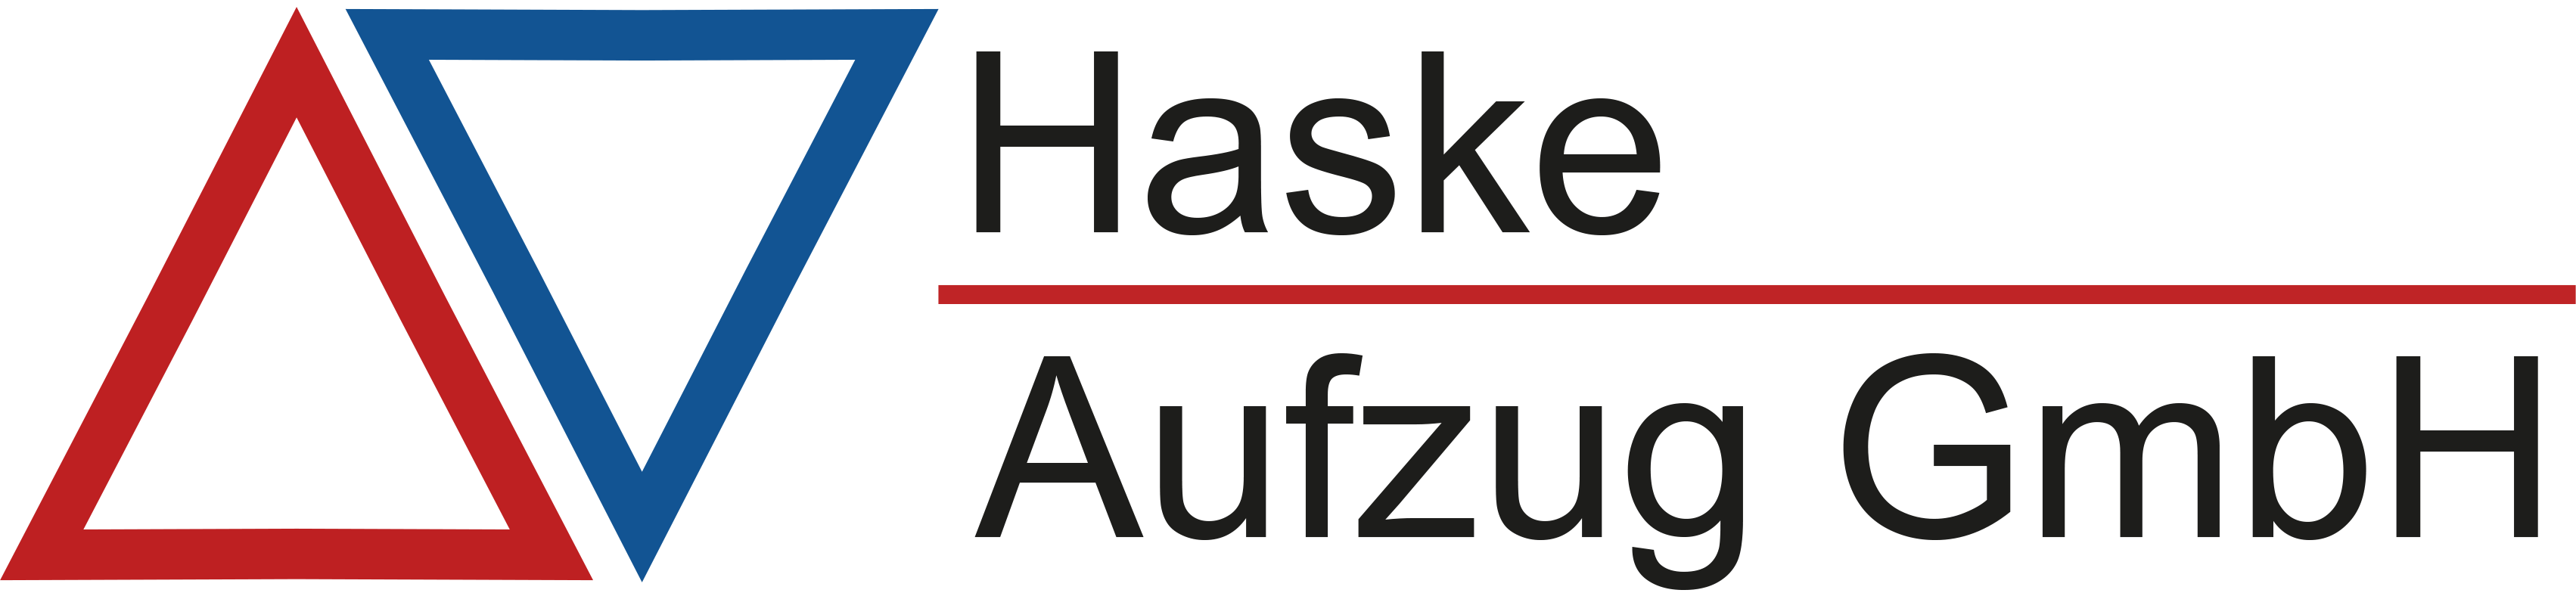 Haske Aufzug GmbH